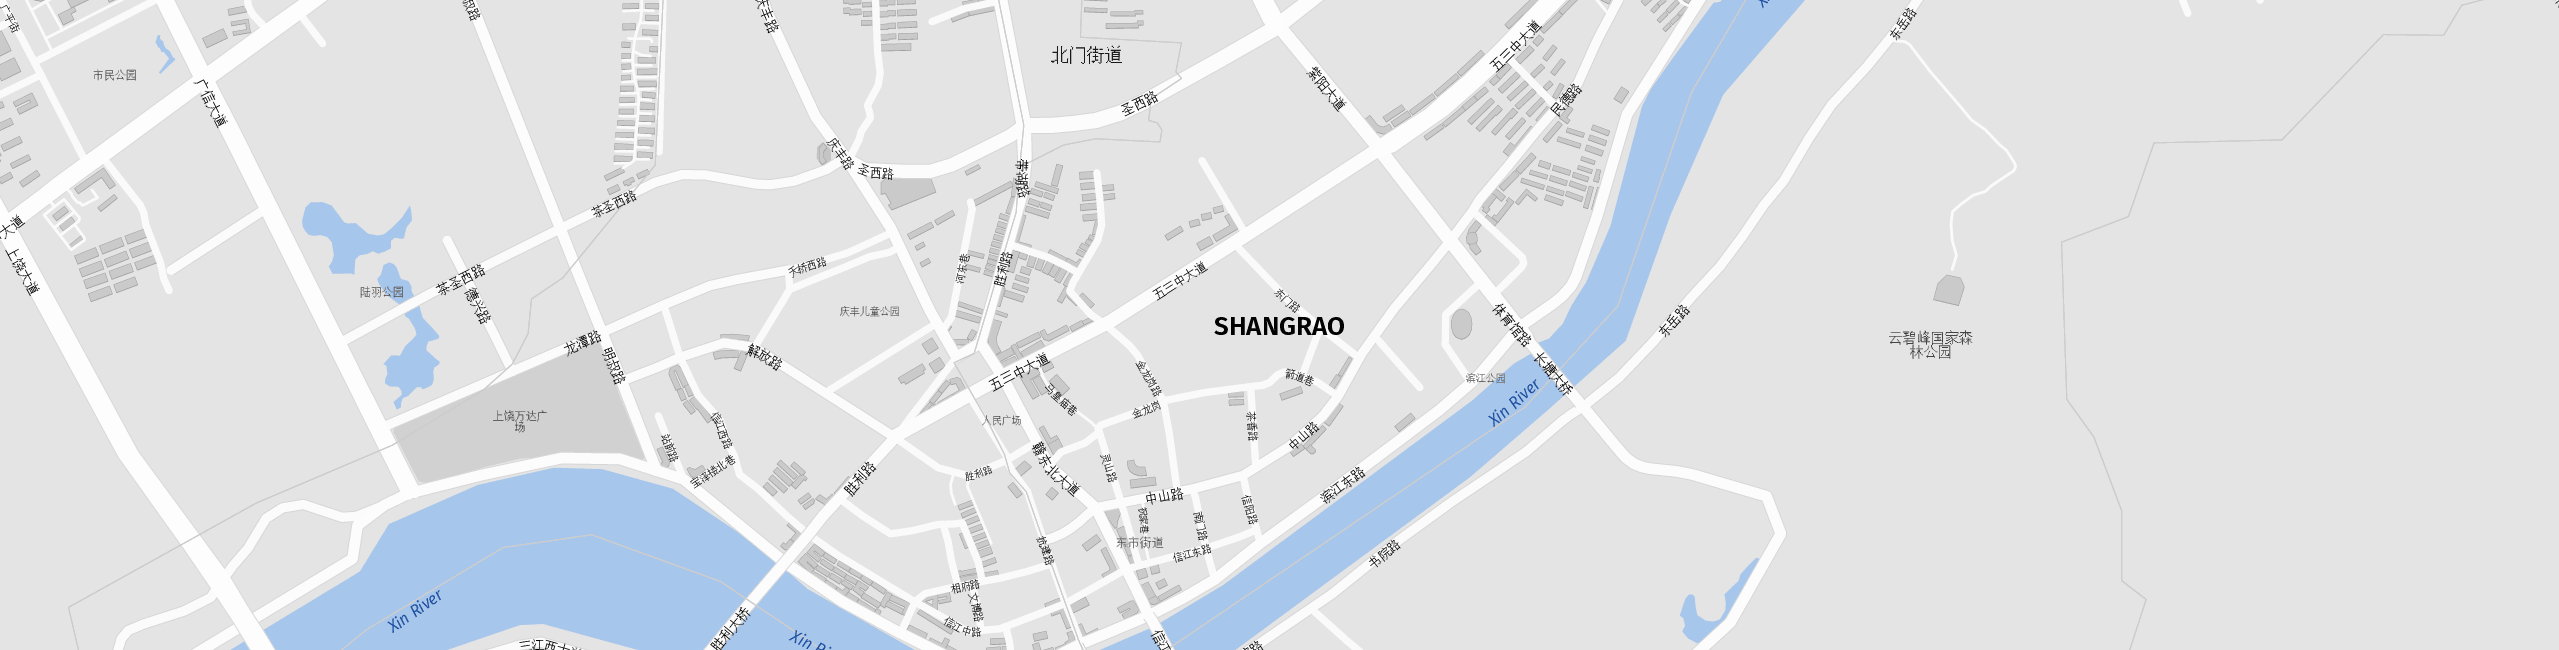 Stadtplan Shangrao zum Downloaden.